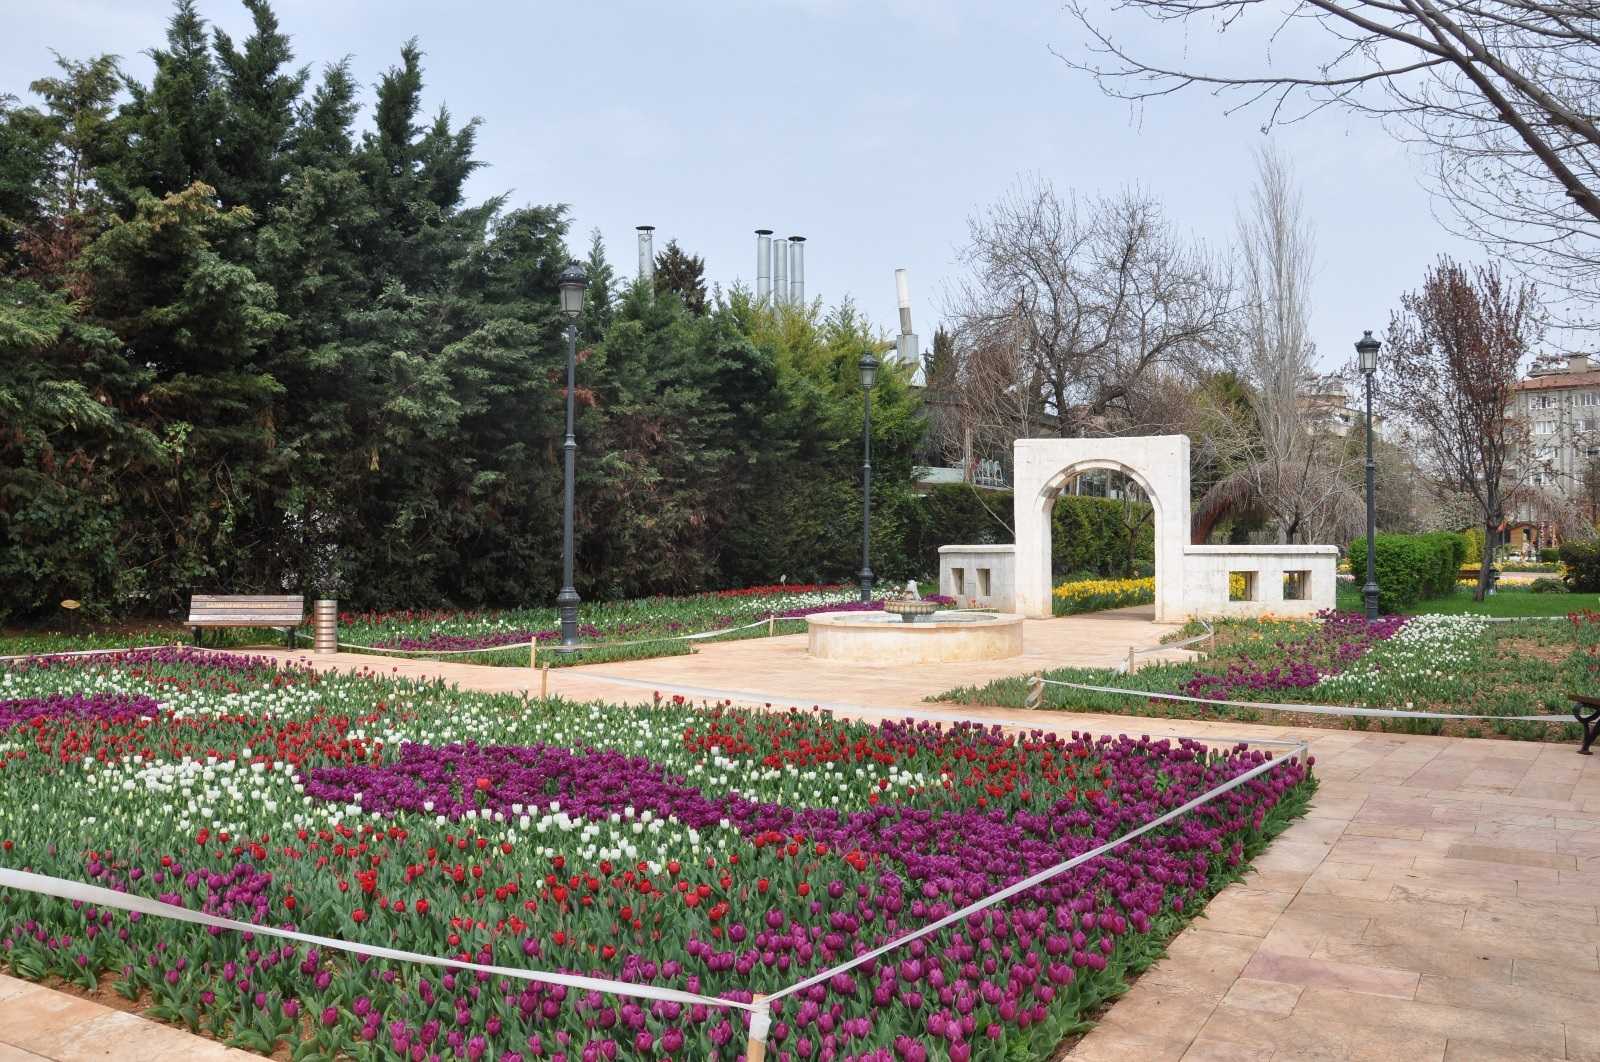 Gaziantep Botanik Bahçesi ziyaretçilerini bekliyor